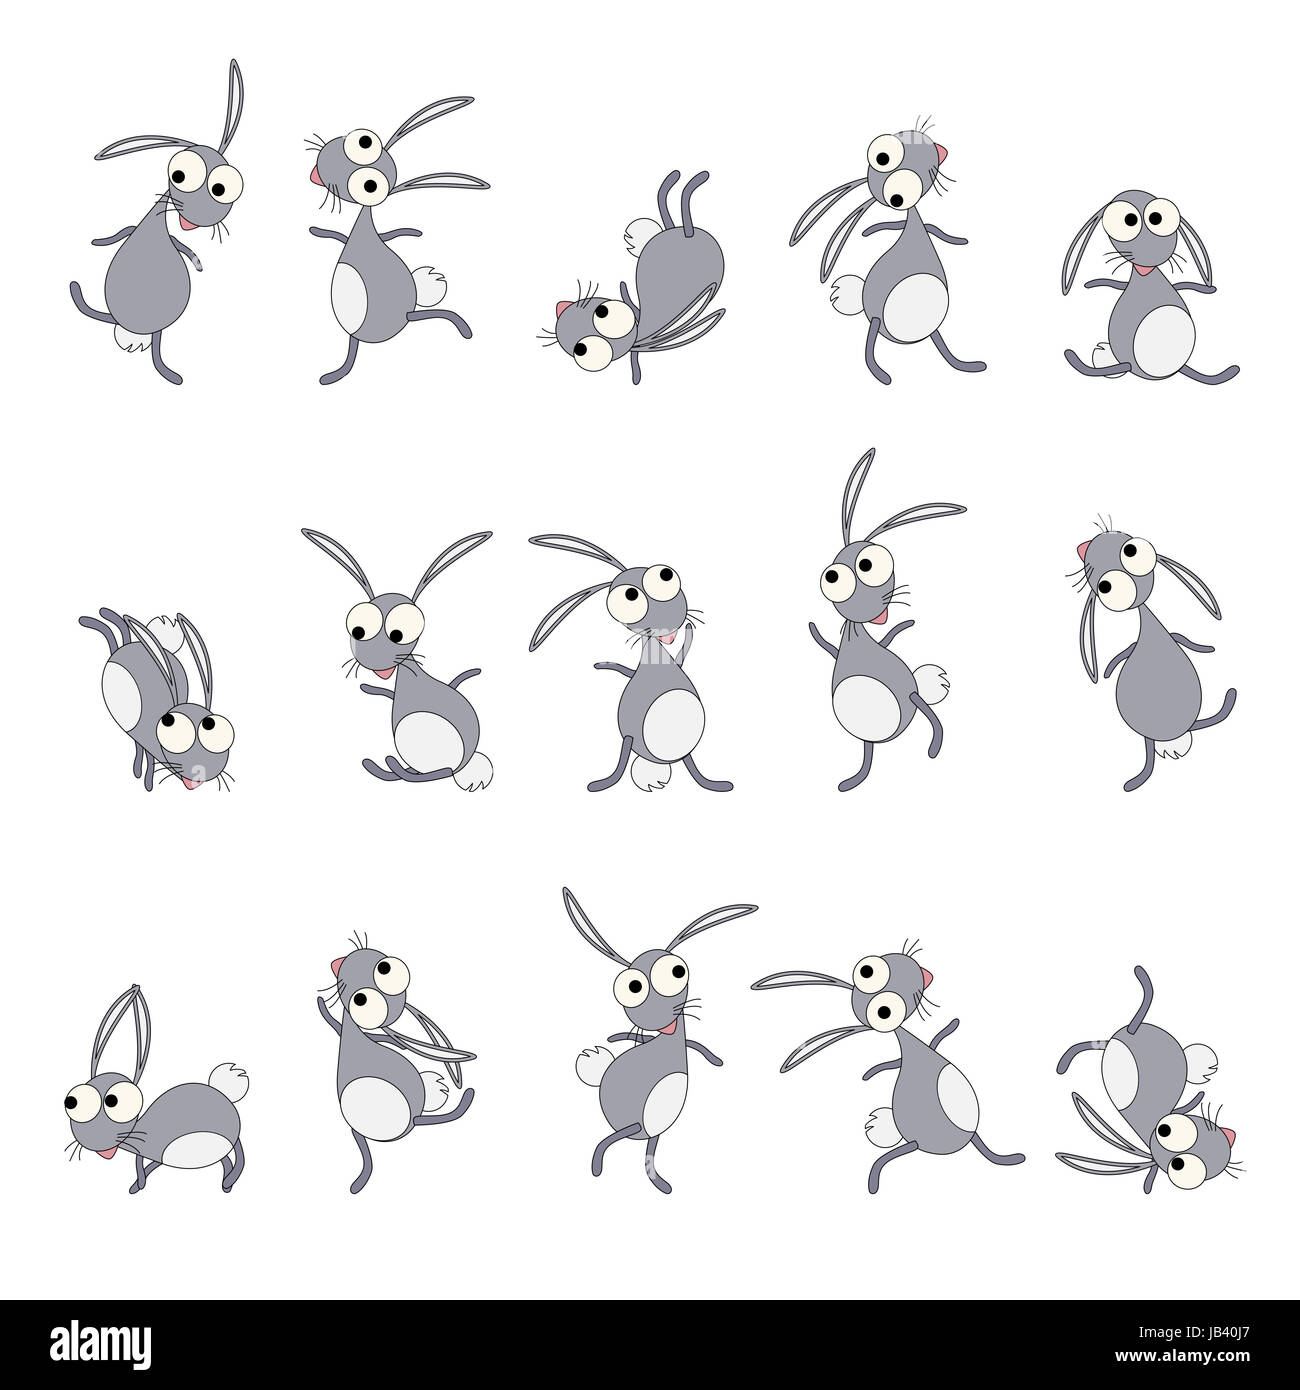 Dancing rabbits cartoon style drawing set Stock Photo